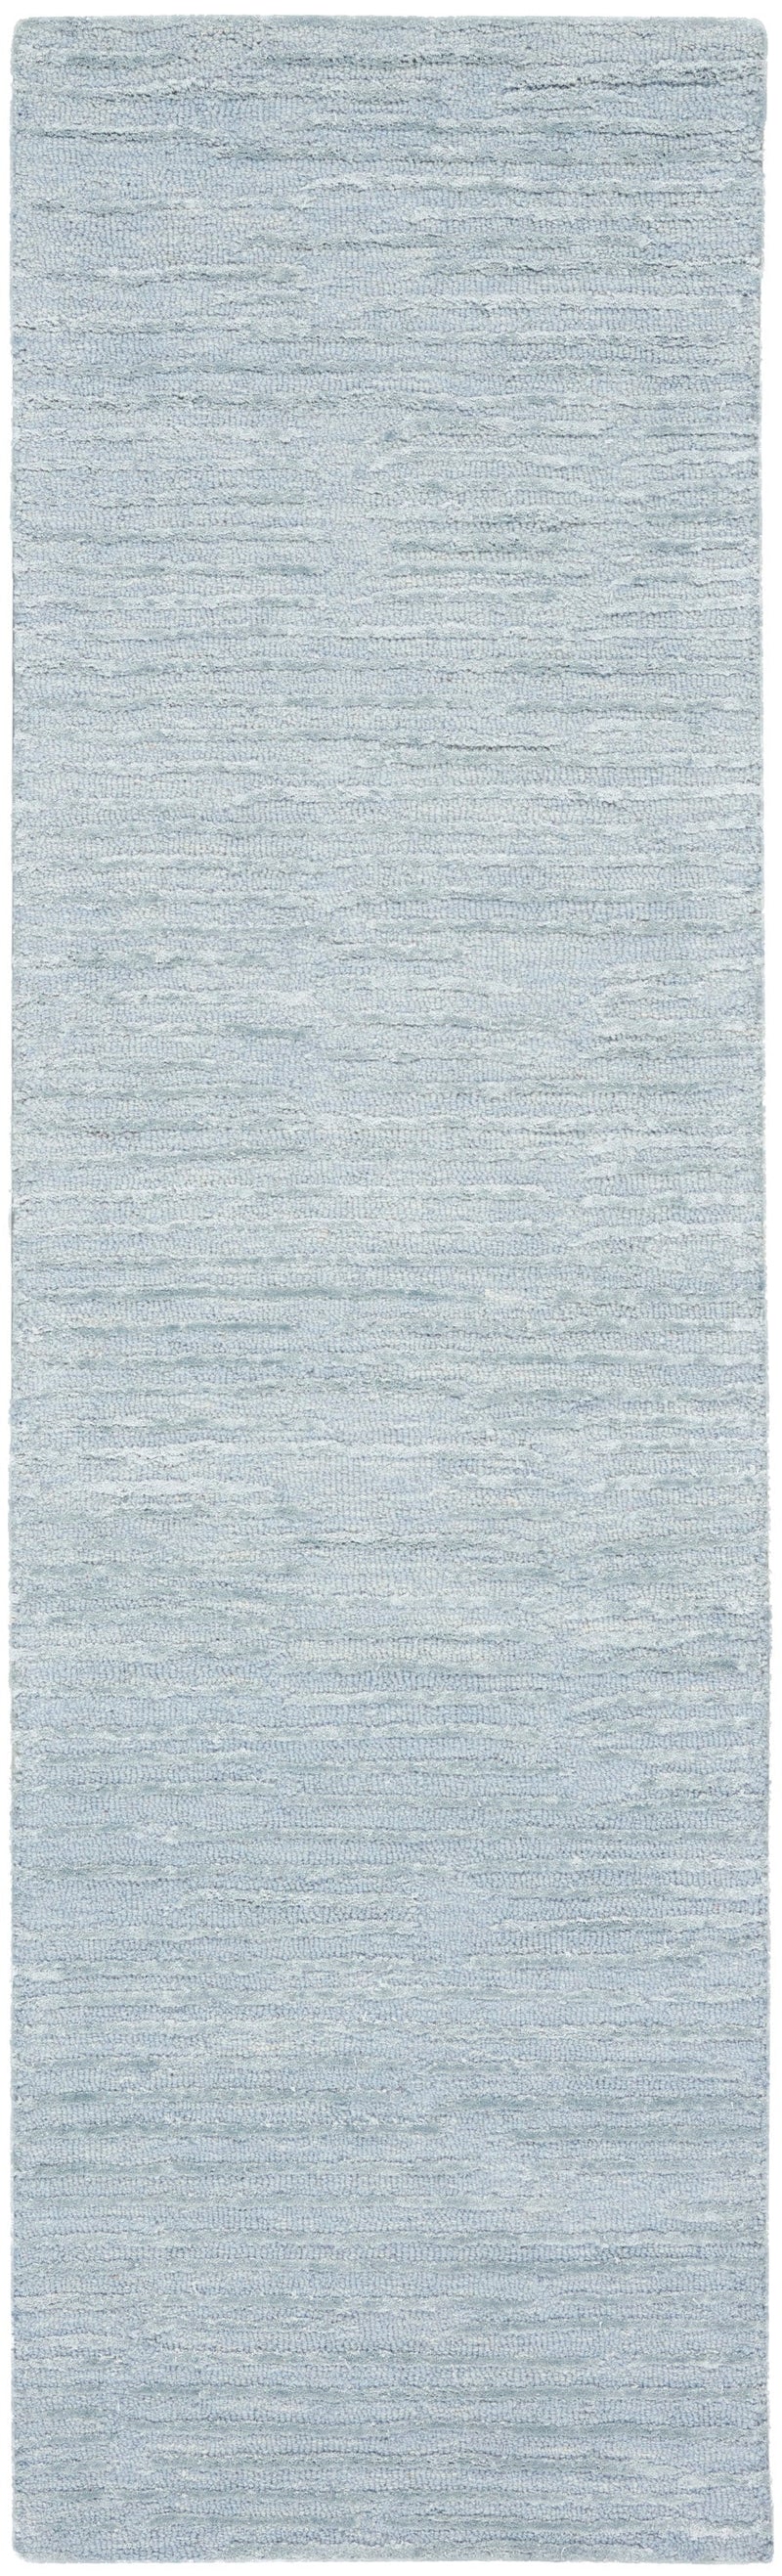 media image for ck010 linear handmade light blue rug by nourison 99446879950 redo 2 281